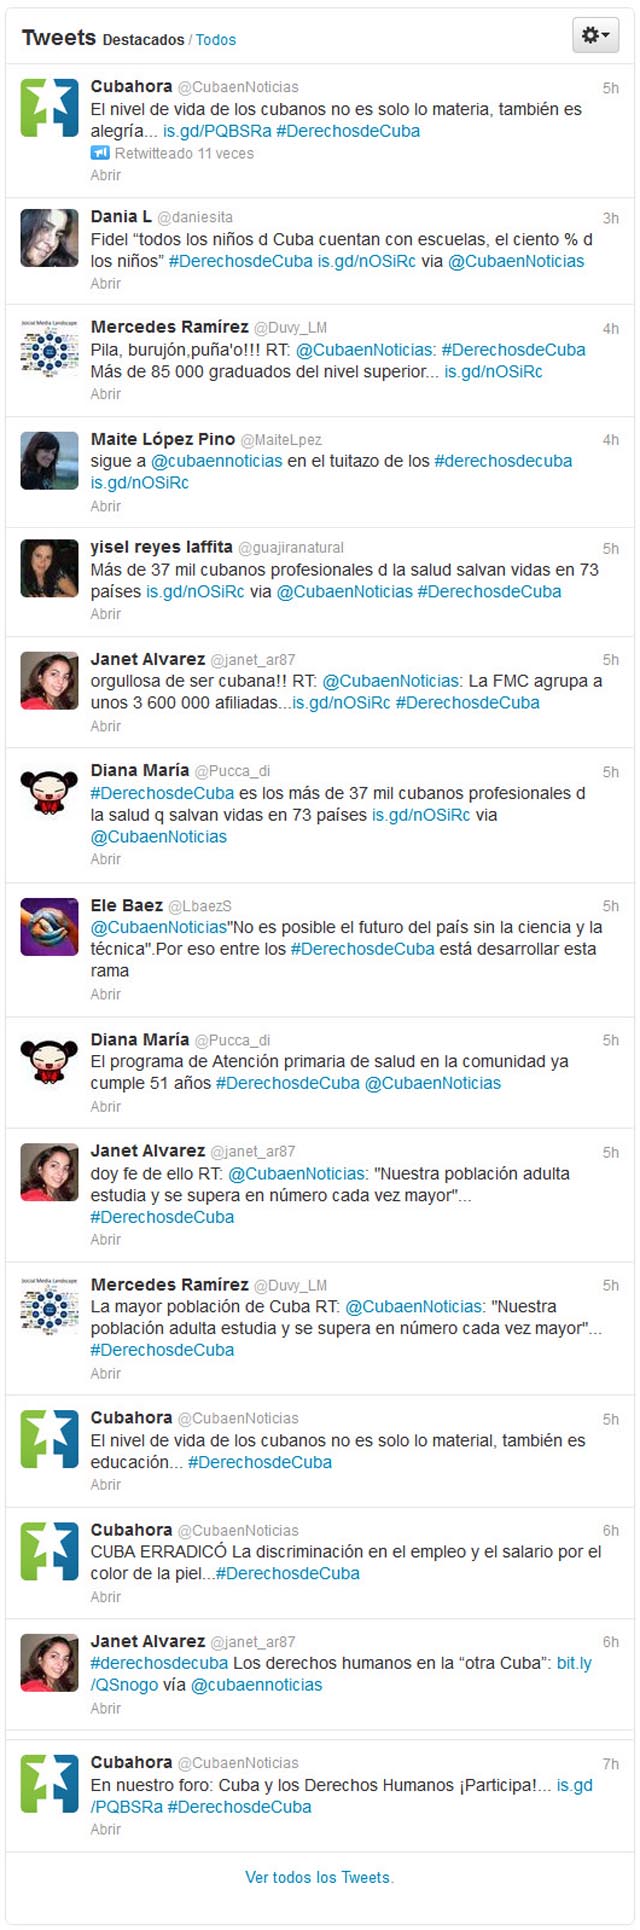 Tweets - #DerechosdeCuba 10dic